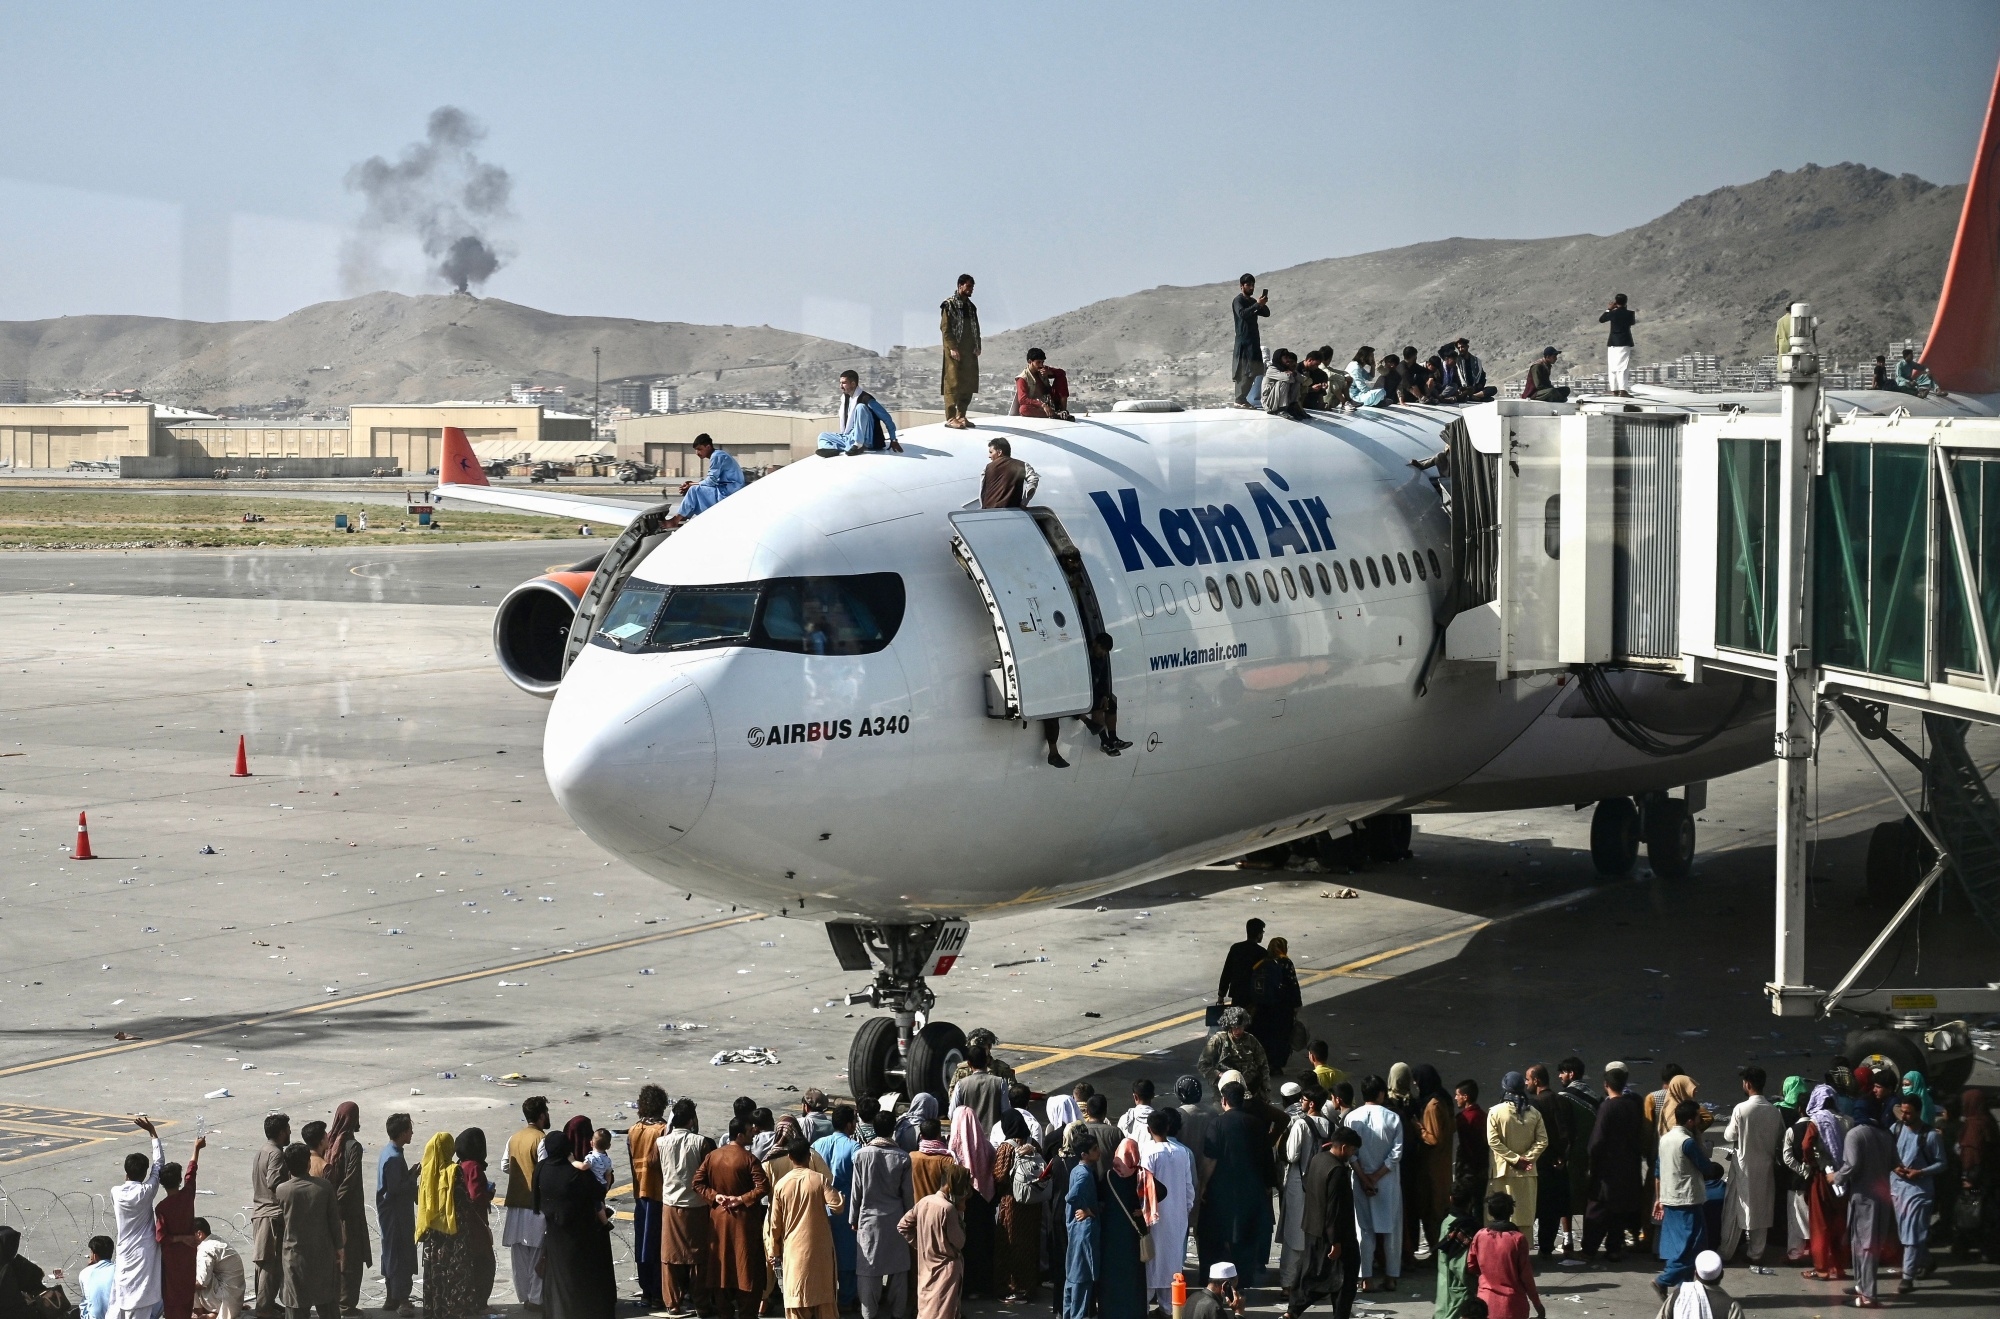 阿富汗喀布尔国际机场卫星图像 - 荒原之梦